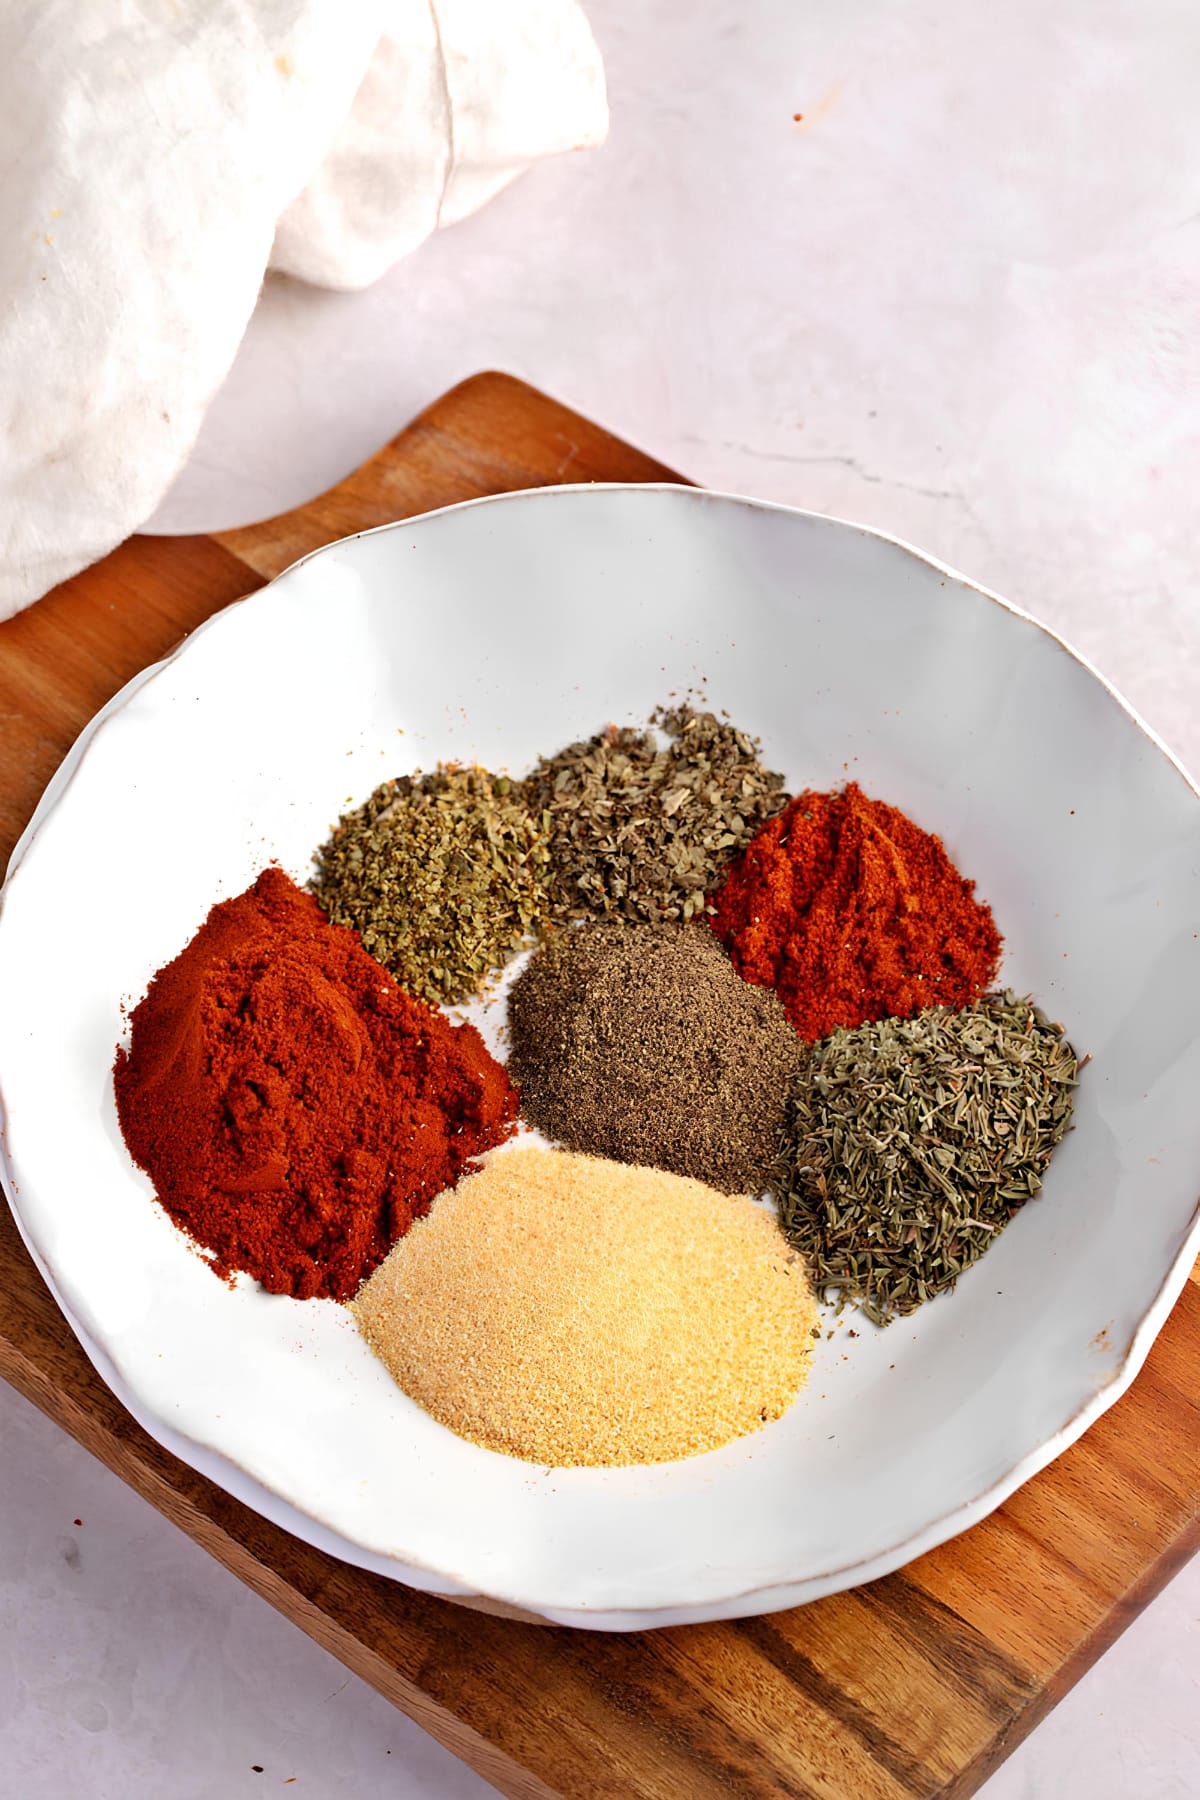 Blackened Seasoning Ingredients: Paprika, Cayenne, Garlic Powder, Black Pepper, Basil, Oregano and Thyme